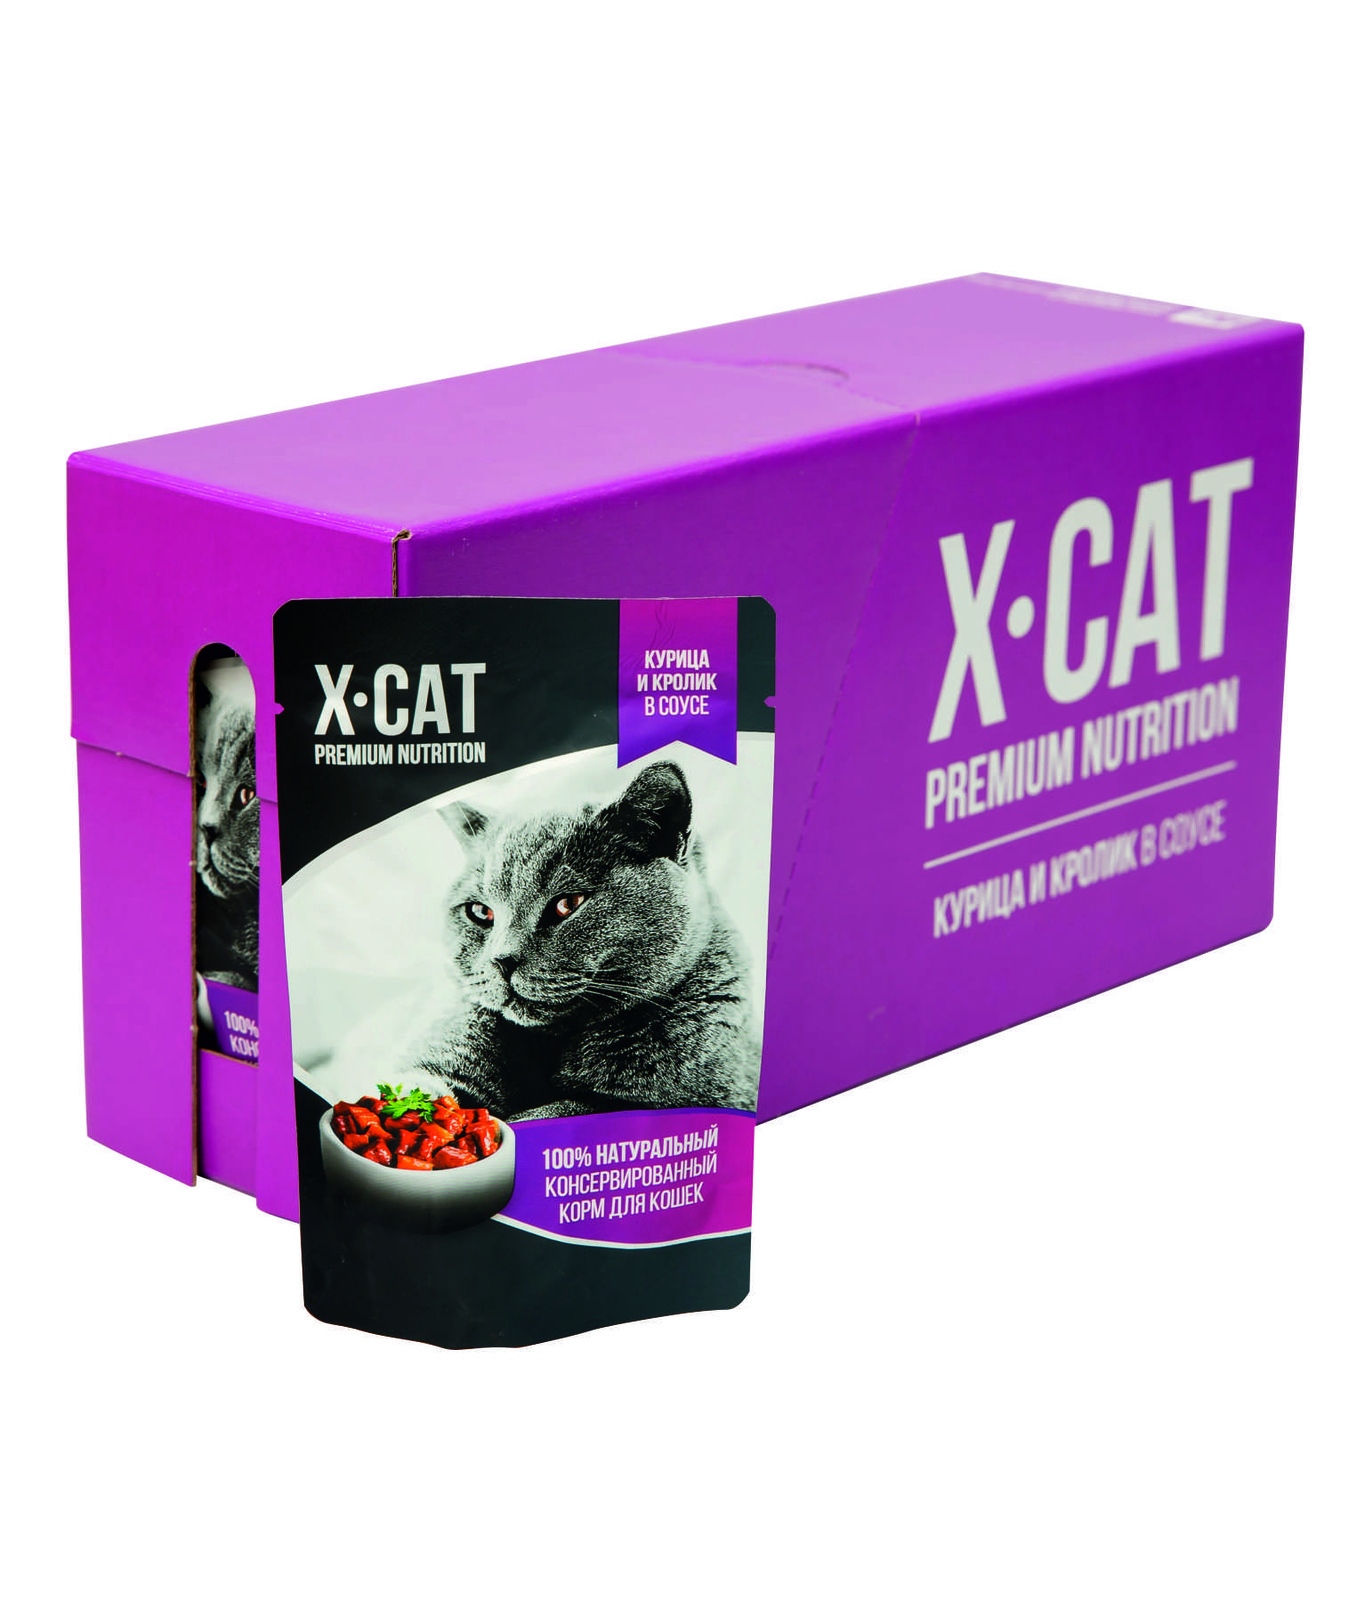 Влажный корм для кошек X-CAT Premium Nutrition с курицей и кроликом в соусе, 24шт по 85г